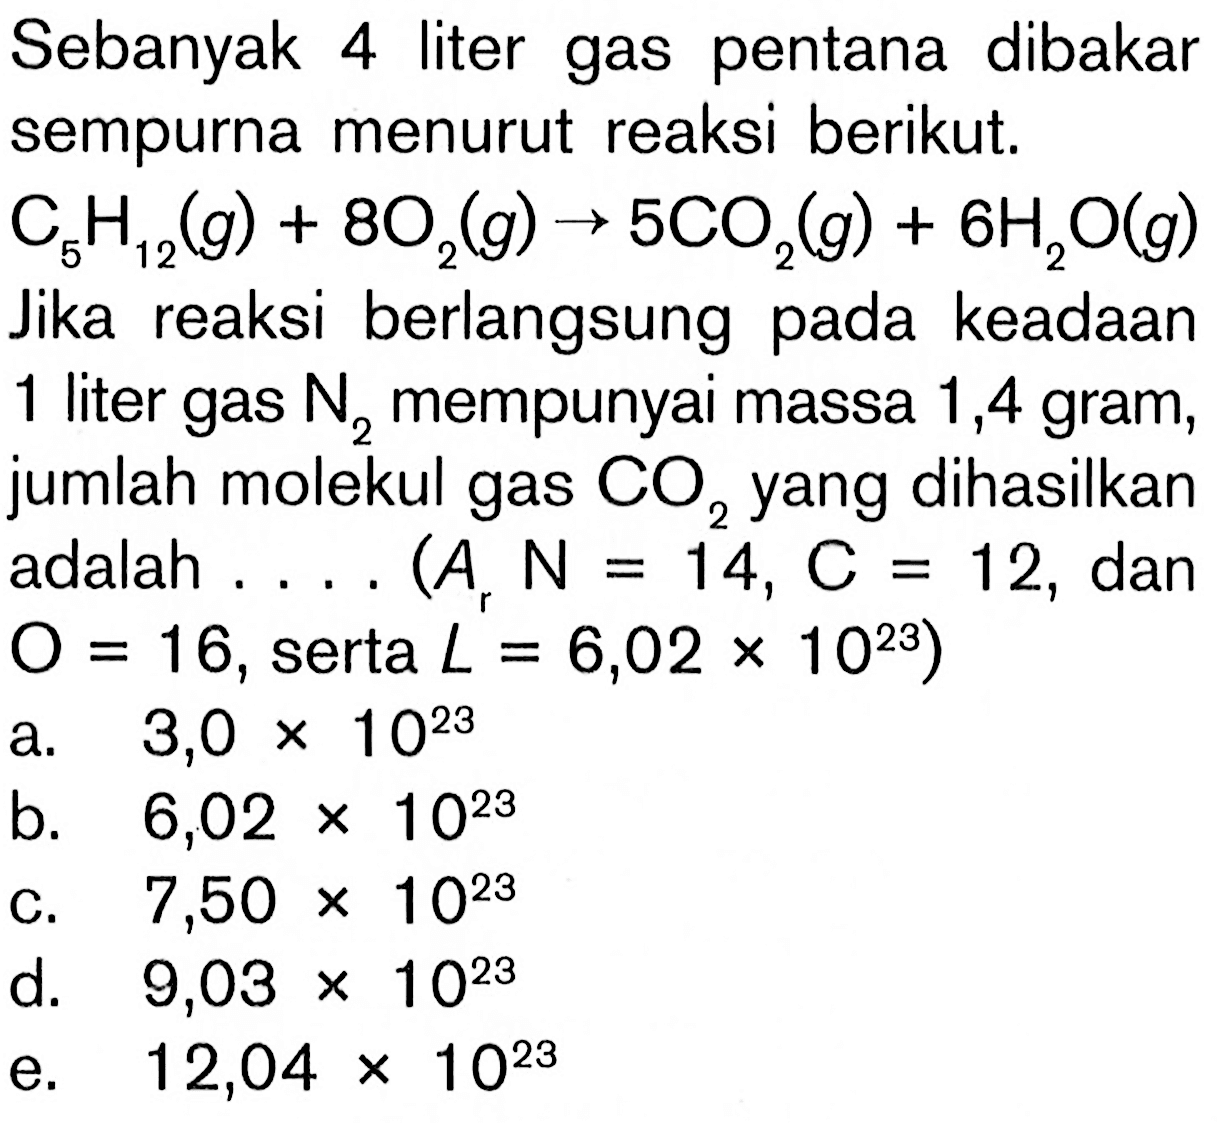 Sebanyak 4 liter gas pentana dibakar sempurna menurut reaksi berikut. C5H12 (g) + 8O2 (g) -> 5CO2 (g) + 6H2O (g) Jika reaksi berlangsung pada keadaan 1 liter gas N2 mempunyai massa 1,4 gram, jumlah molekul gas CO2 yang dihasilkan adalah ... (Ar N = 14, C = 12, dan O = 16, serta L = 6,02 x 10^23)